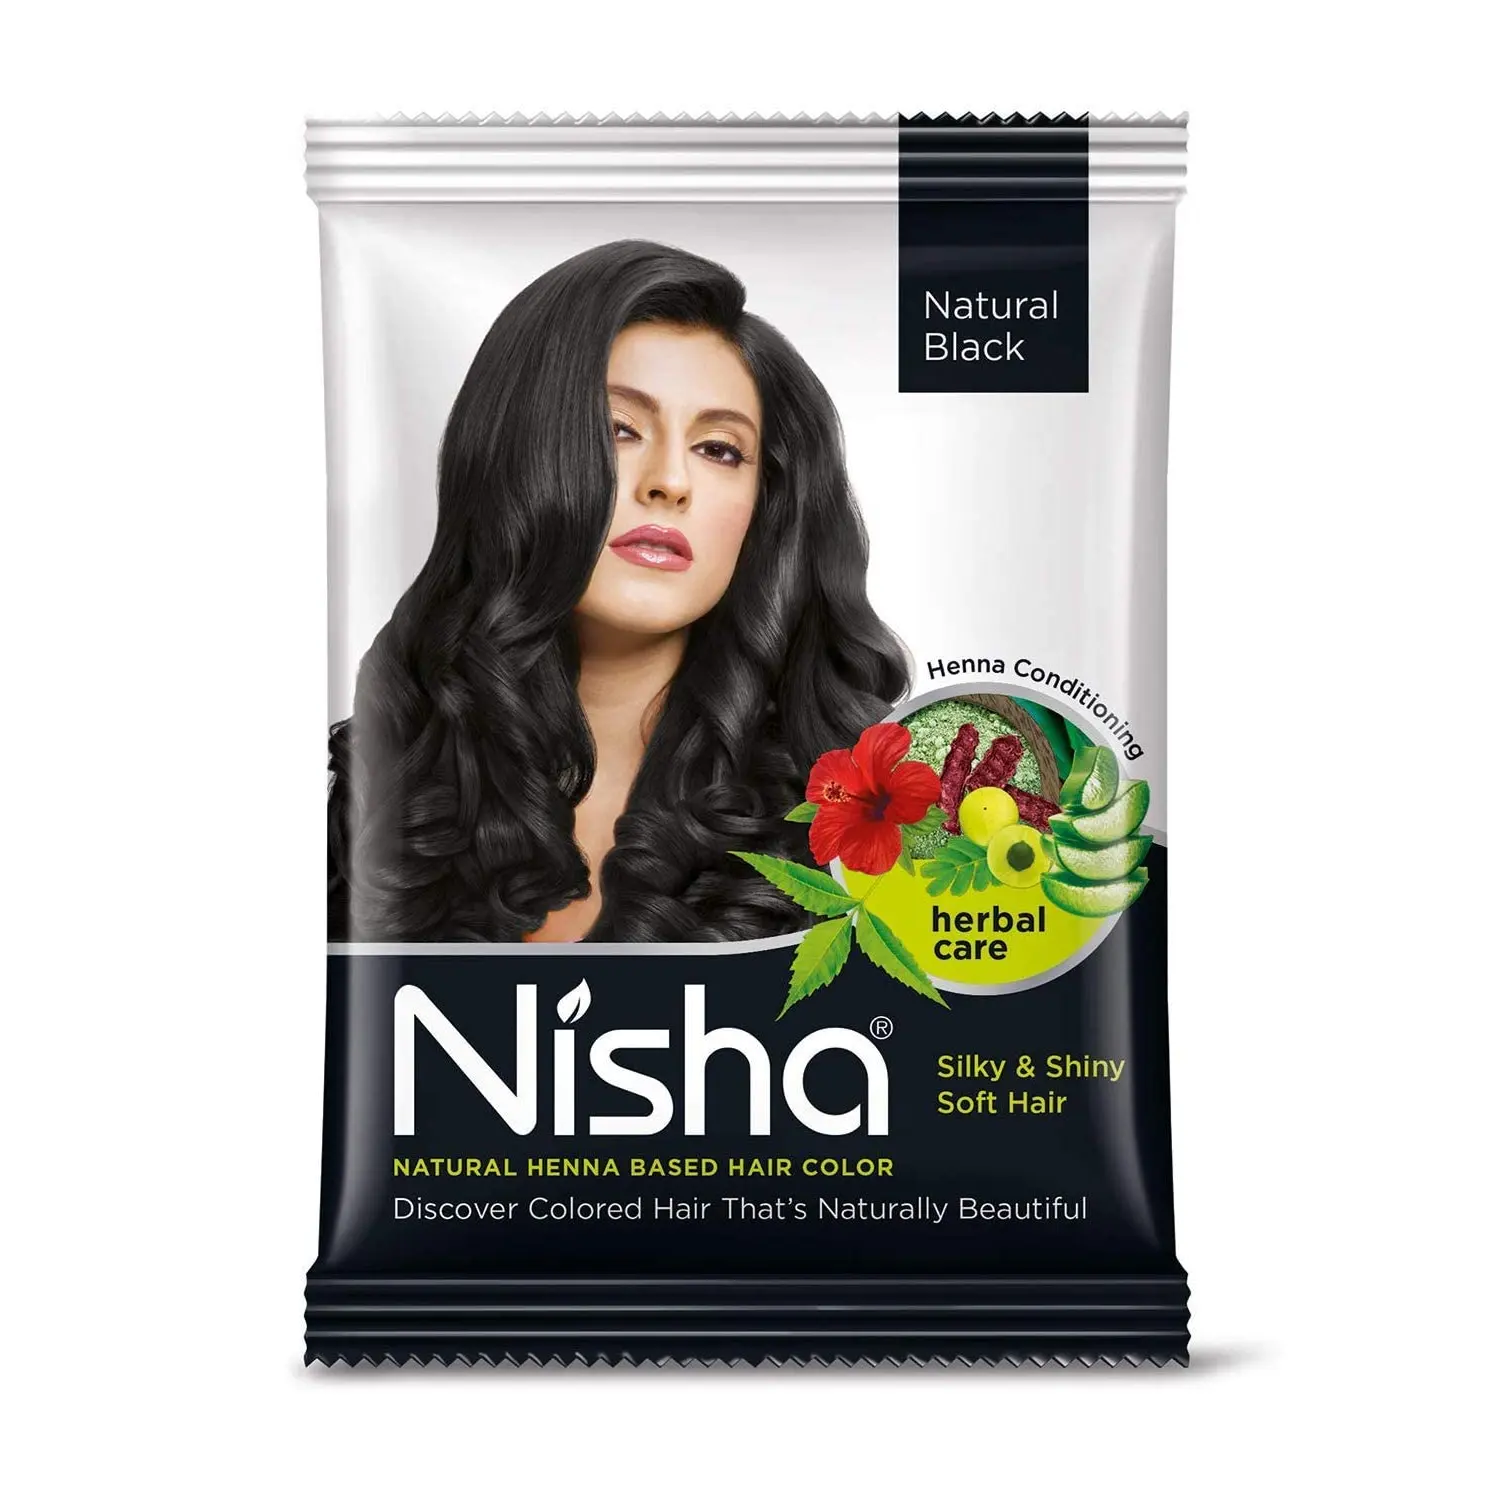 Bestseller Natural Henna Based Haarfarbe mit natürlichem Aussehen ohne Ammoniak Männer & Frauen Haarfarbe